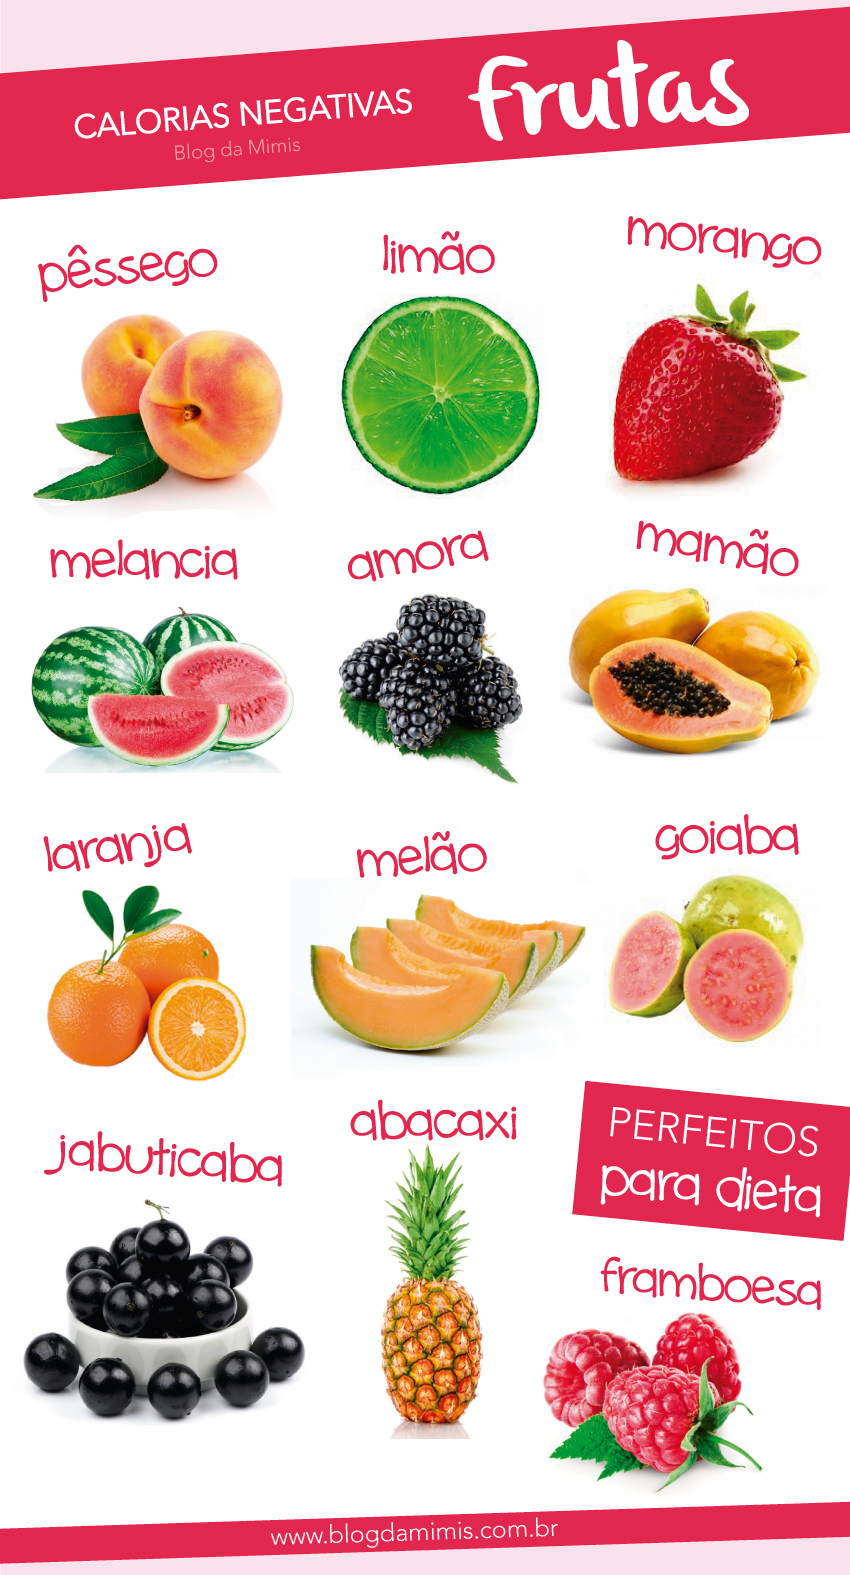 calorias-negativas-frutas-blog-da-mimis-michele-franzoni